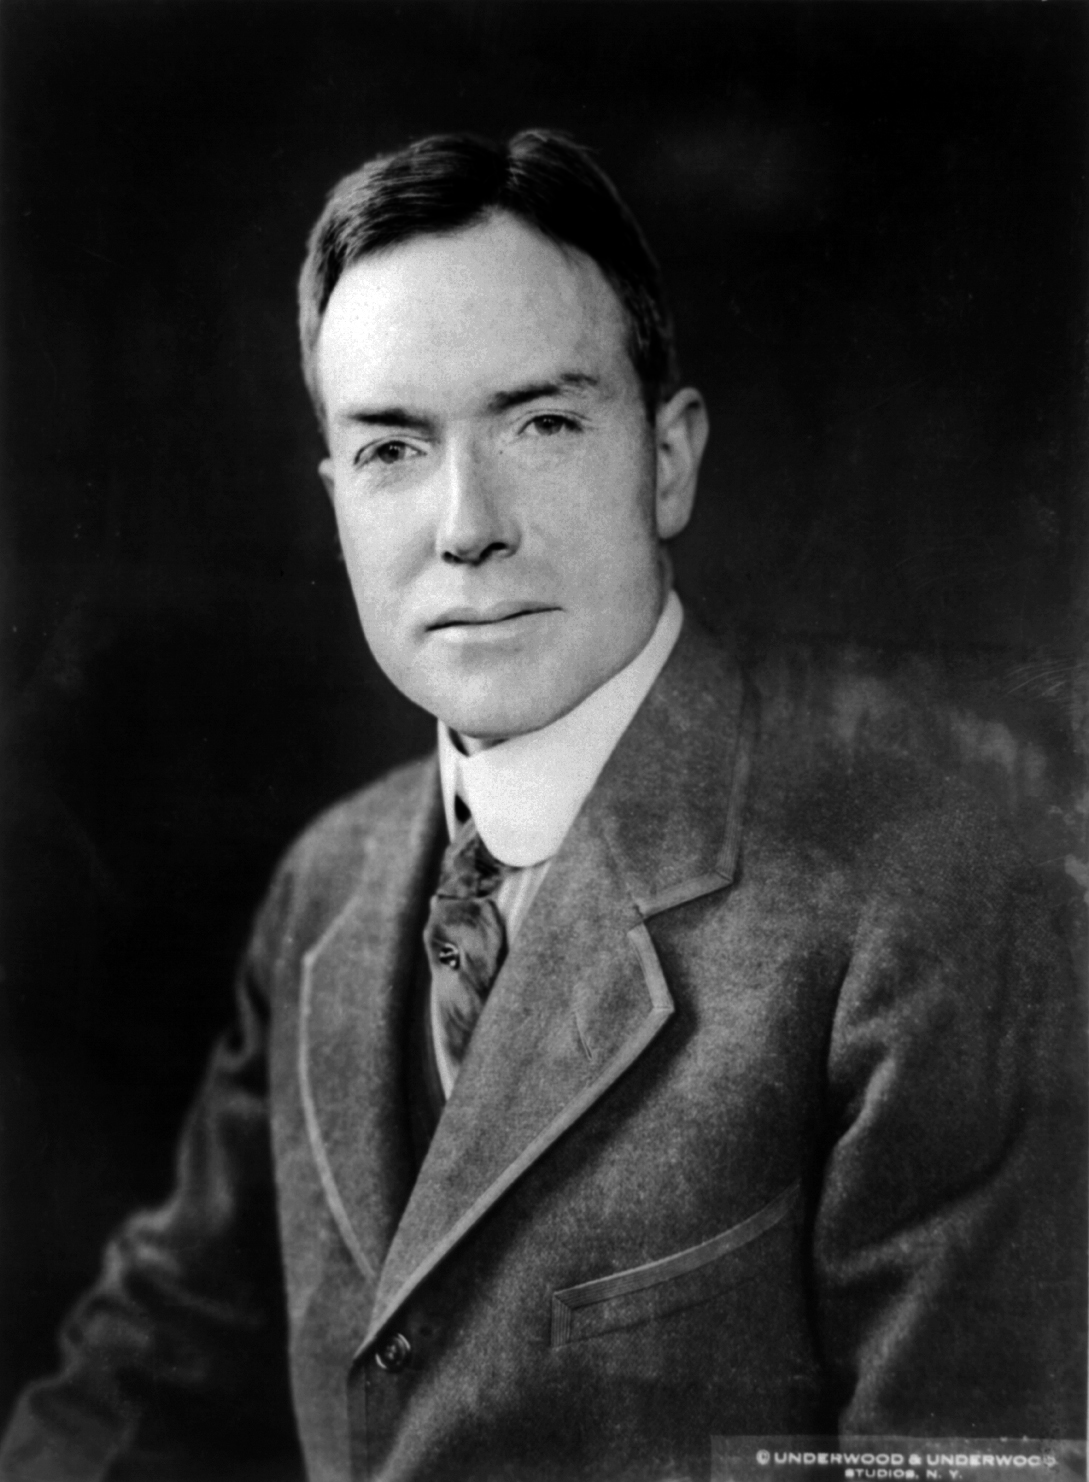 John D. Rockefeller junior